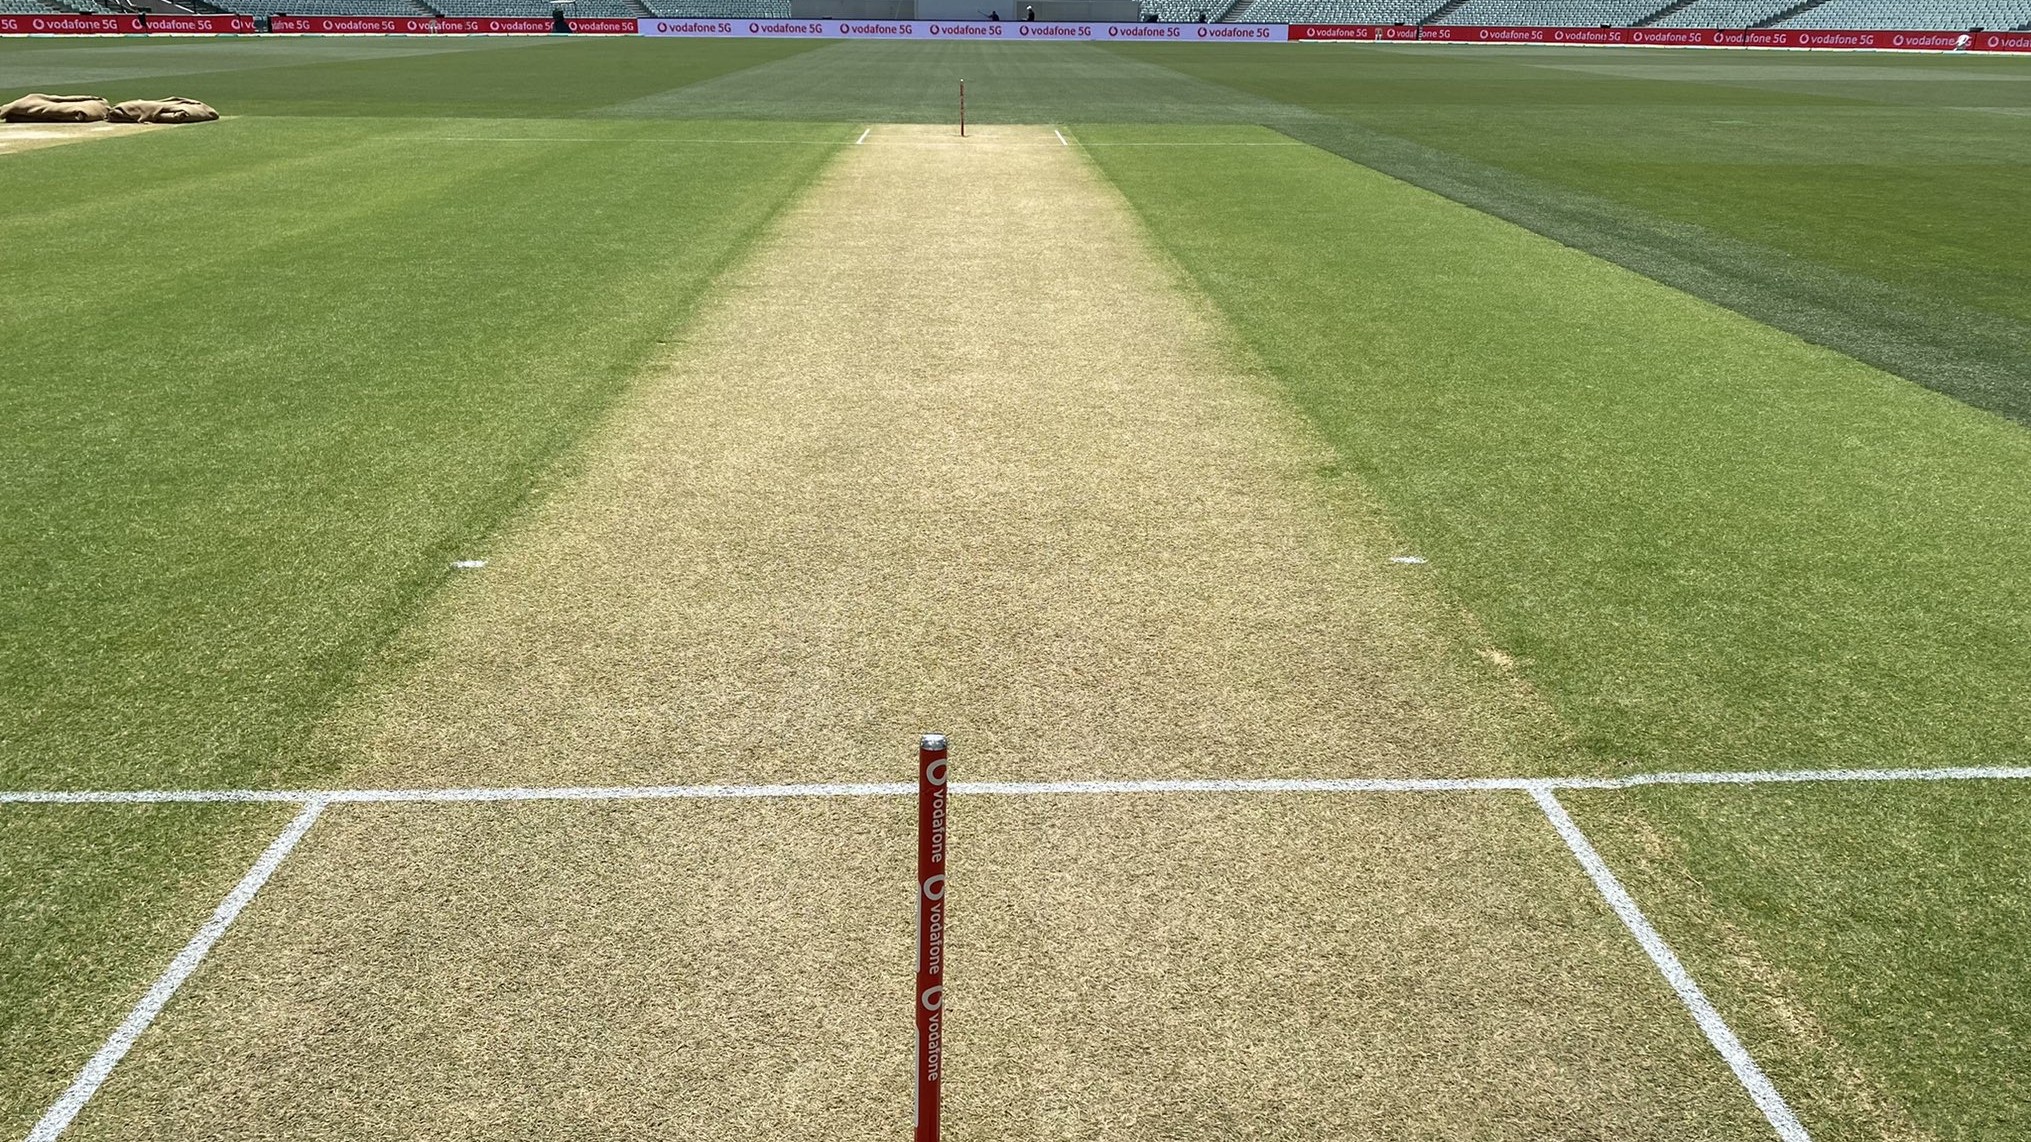 AUS v IND 2020-21 : पिच पर मौजूद हरा रंग पर बल्लेबाज़ी के अनुकूल - जानिये डे-नाईट टेस्ट मैच से पहले पिच का हाल 